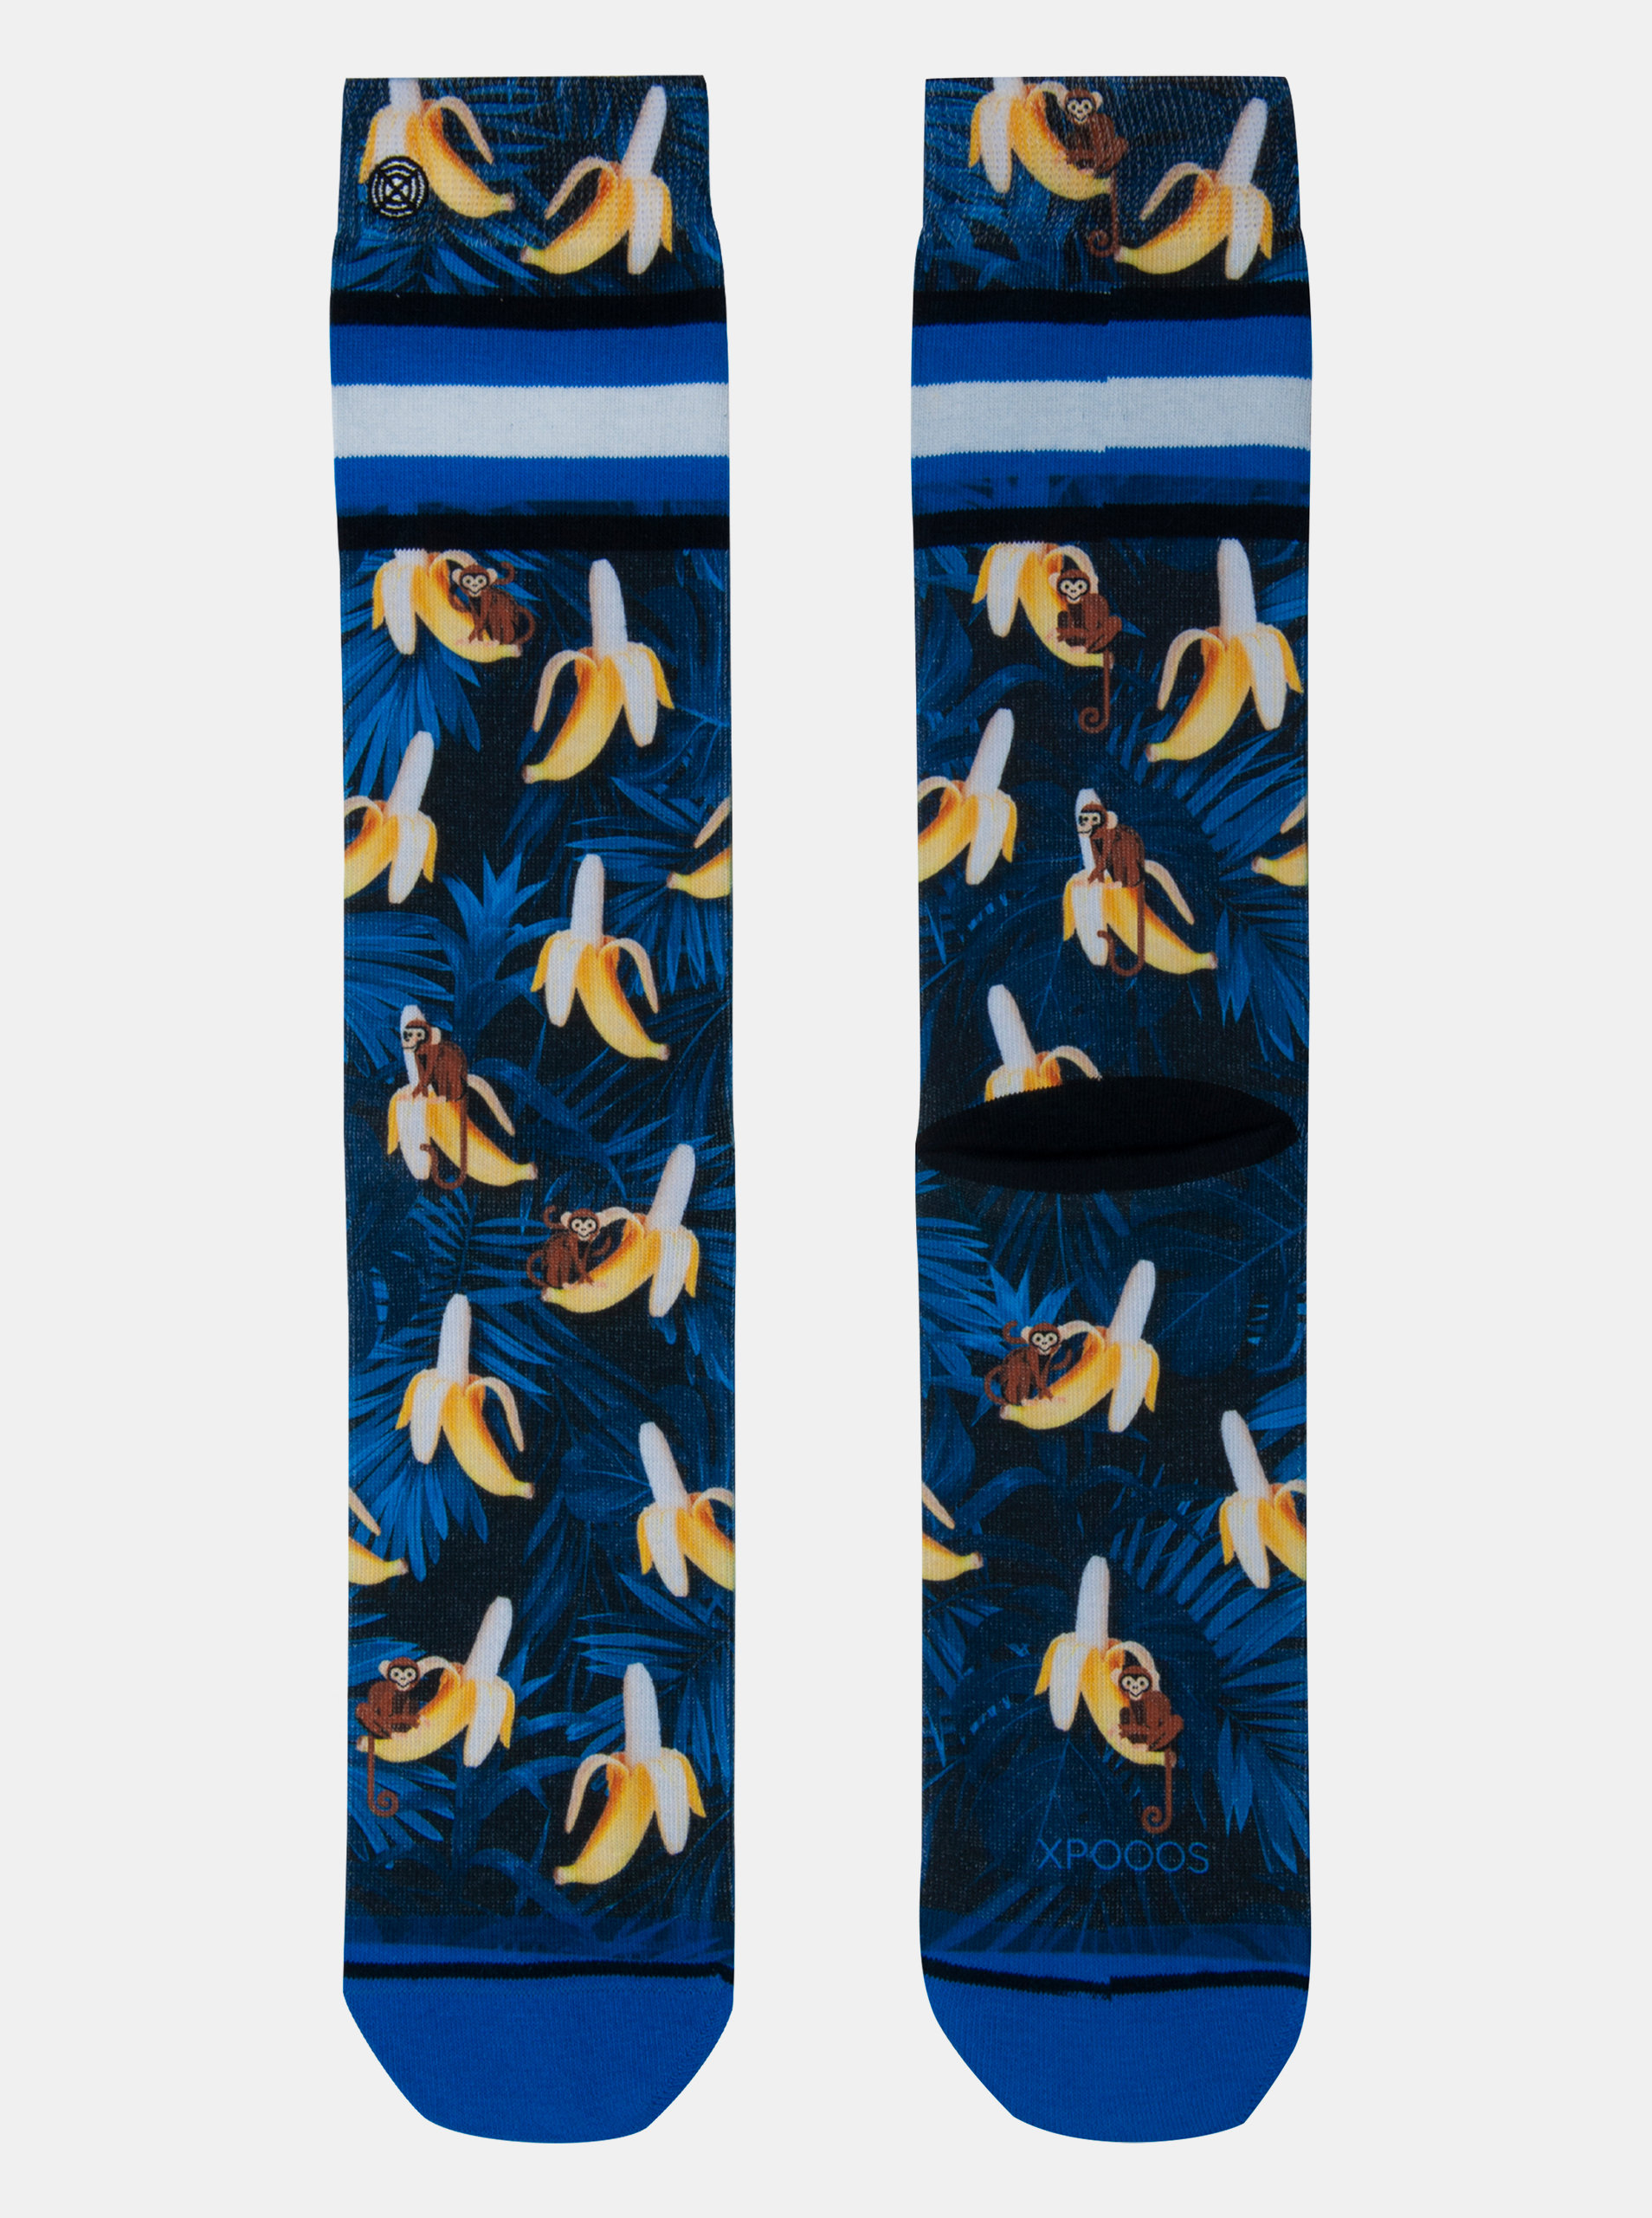 Fotografie Tmavě modré pánské ponožky XPOOOS